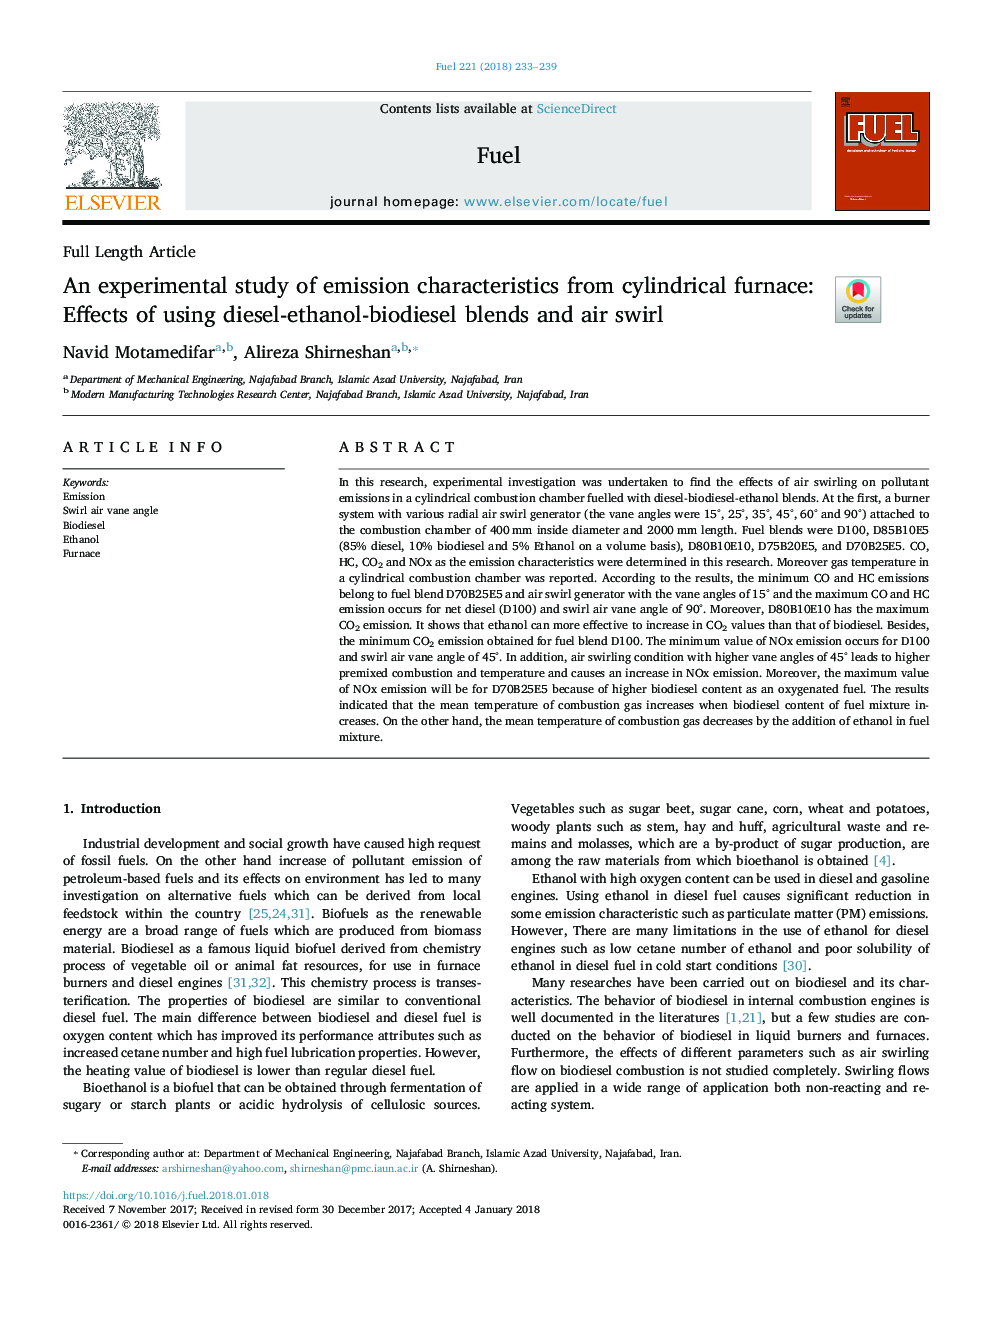 بررسی تجربی از ویژگی های انتشار از کوره استوانه ای: اثرات استفاده از مخلوط دیزل-اتانول-بیودیزل و چرخش هوا 